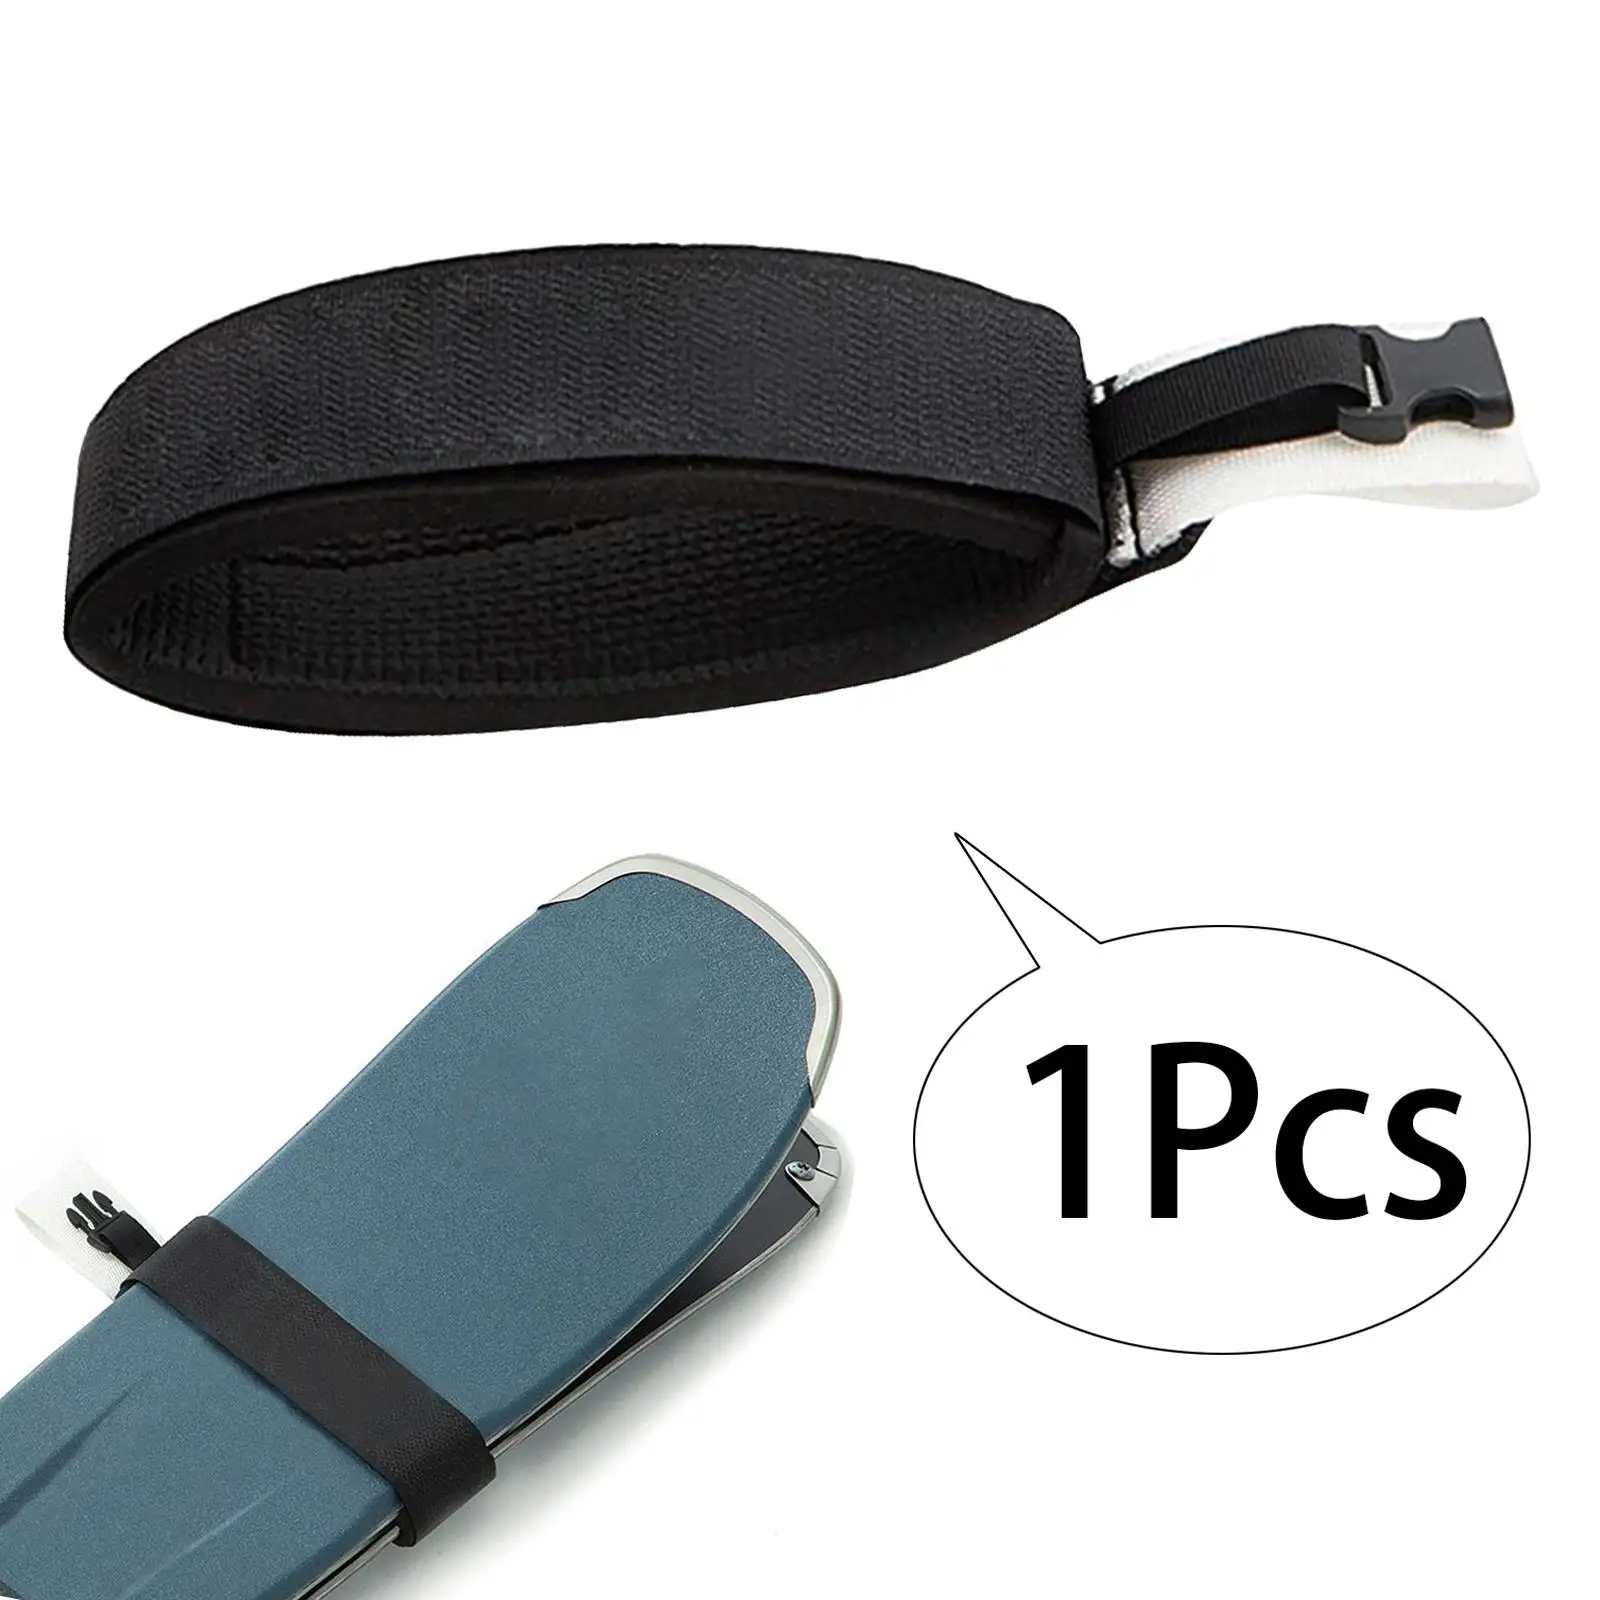 Ski Strap Belt for Carrying Ski Gear Fixing Strap Portable Ski Wrap Ski Fastener Tape for Ski Ski Board Outdoor Winter Men Women